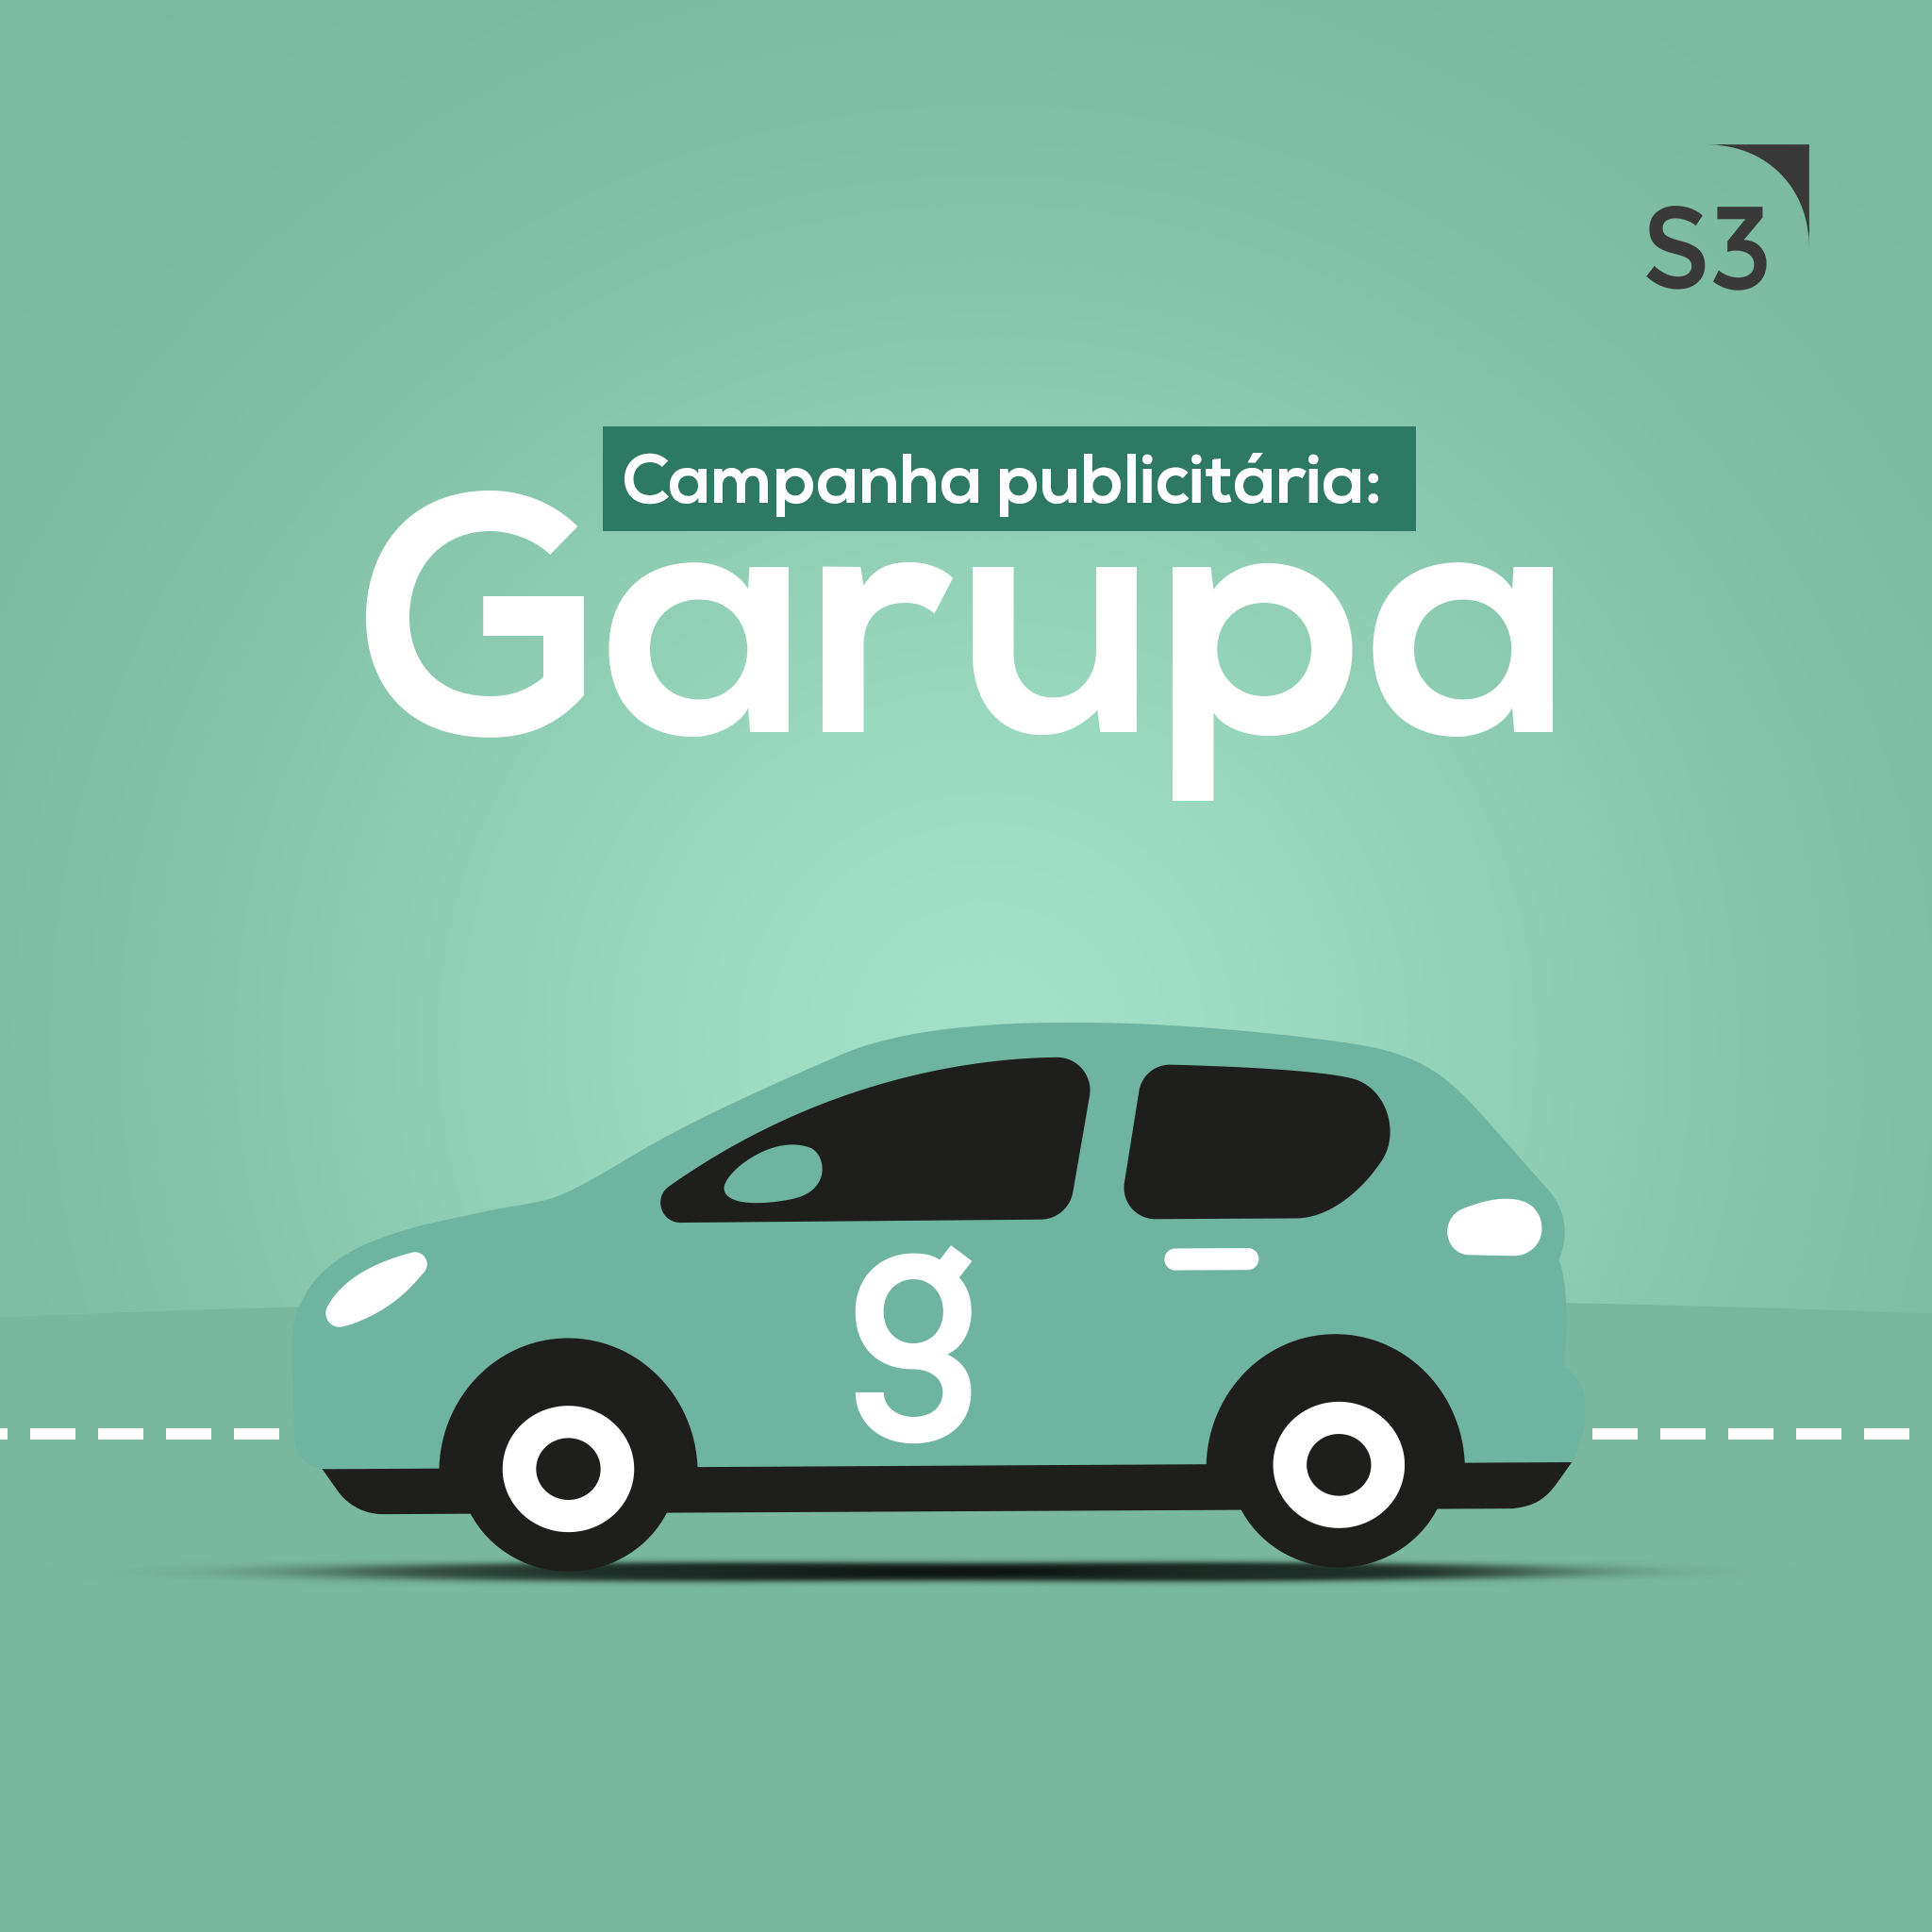 Campanha da empresa de mobilidade urbana Garupa